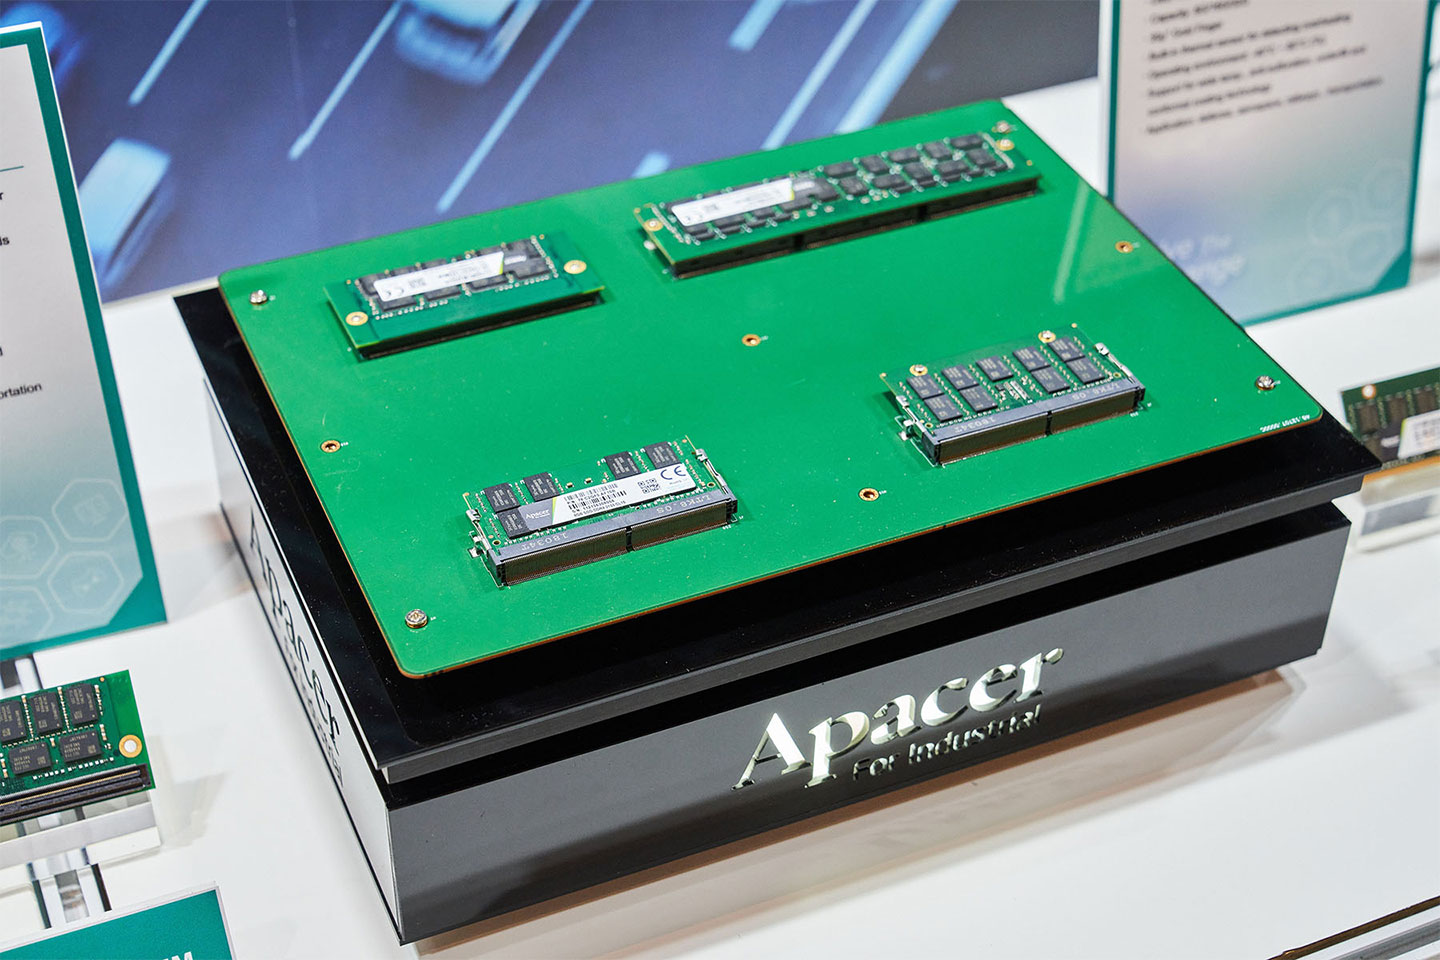 強固型 DDR4 記憶體模組，可適用於移動的車輛、船舶，持續震動的環境下也不會有從主板鬆脫的狀況。